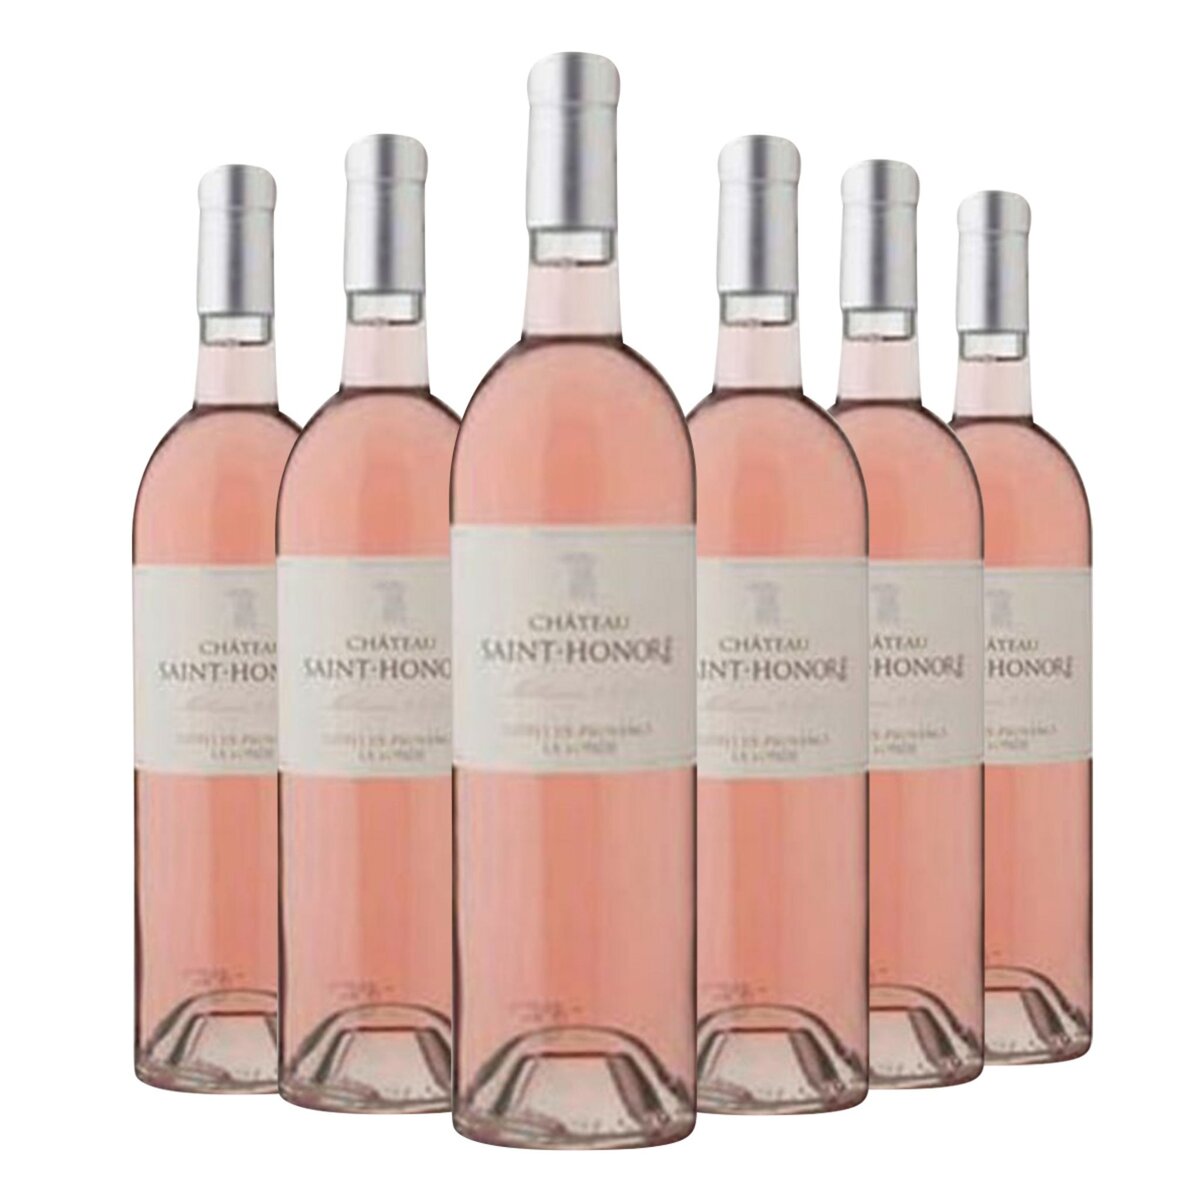 Lot de 6 bouteilles Château Saint Honoré Côtes de Provence Cru Lalonde Rosé 2015